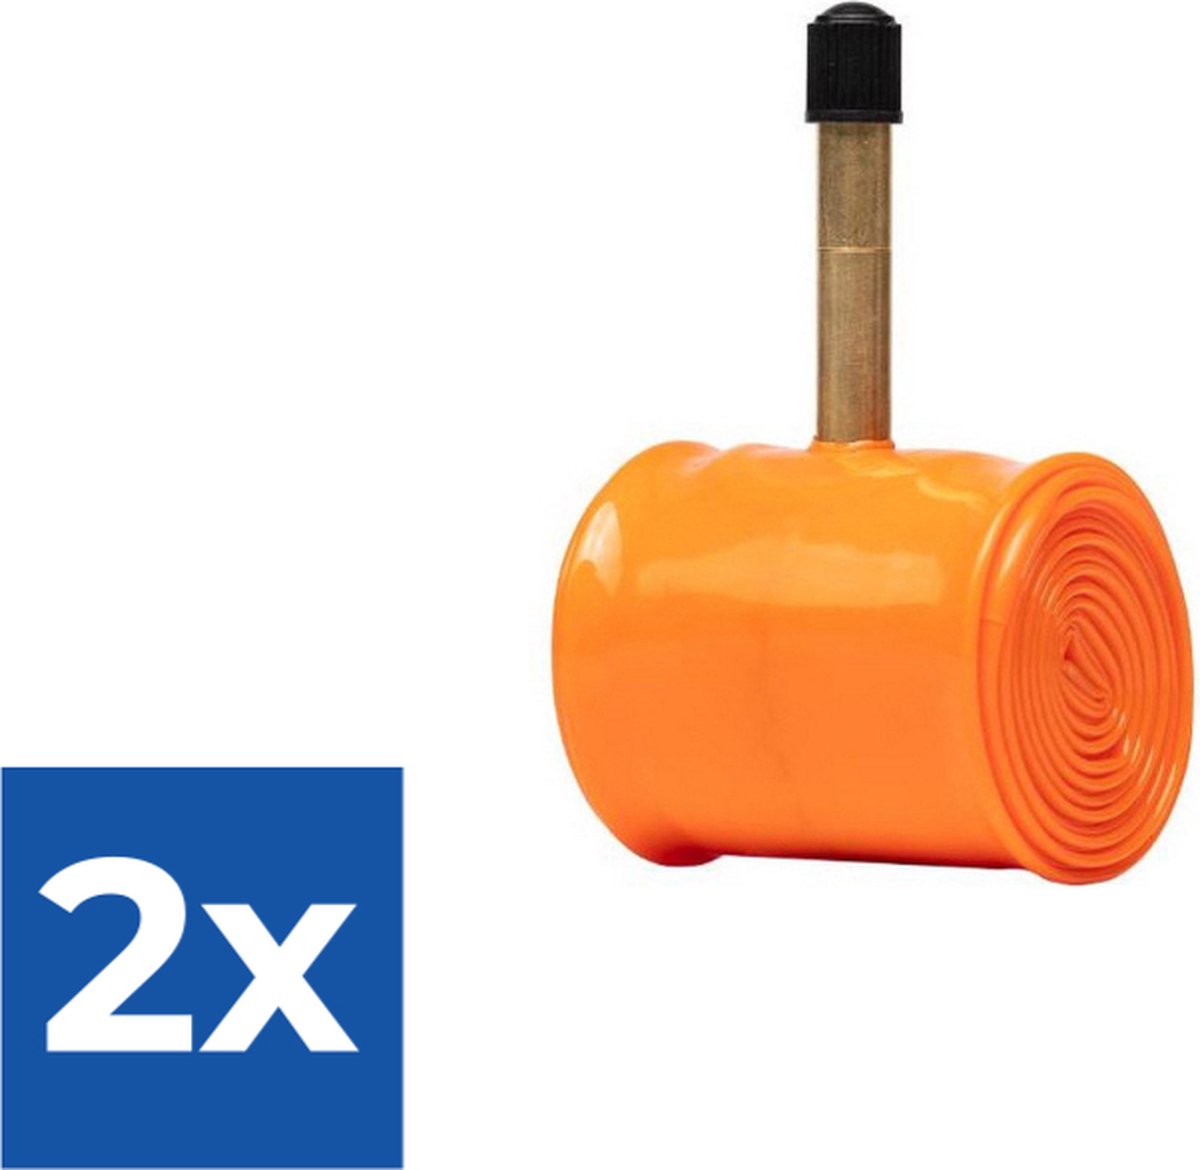 Tubolito Turbo-bmx Schrader 40 Mm Binnenste Buis Oranje 22-24´´ / 1.50-2.50 - Voordeelverpakking 2 stuks